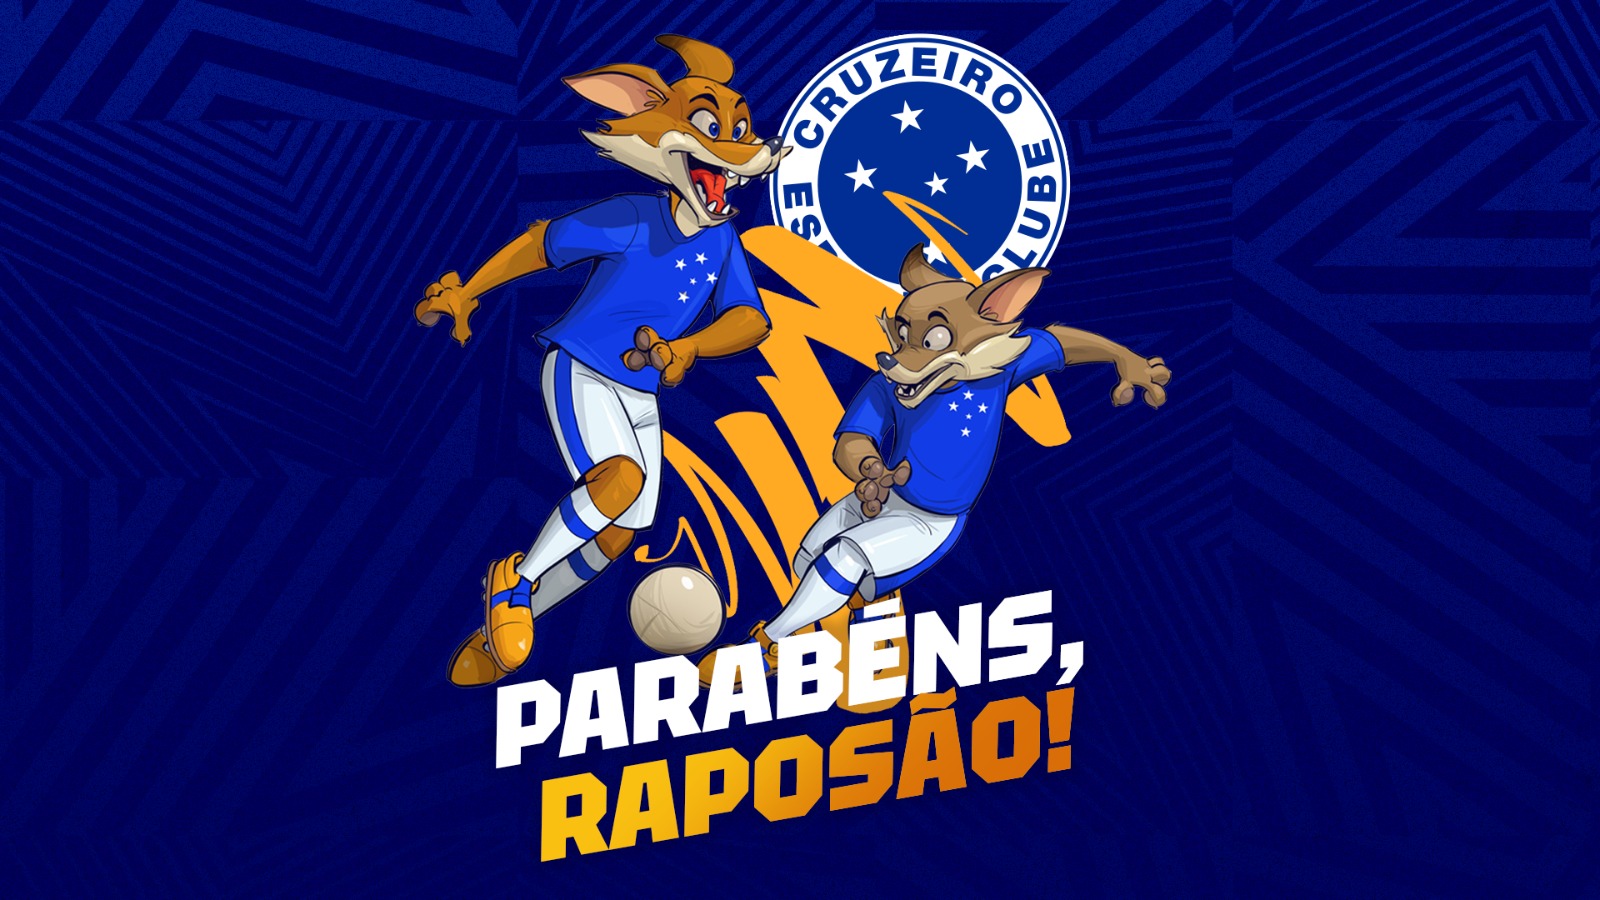 No aniversário de 20 anos do Raposão, Cruzeiro lança novo design dos mascotes